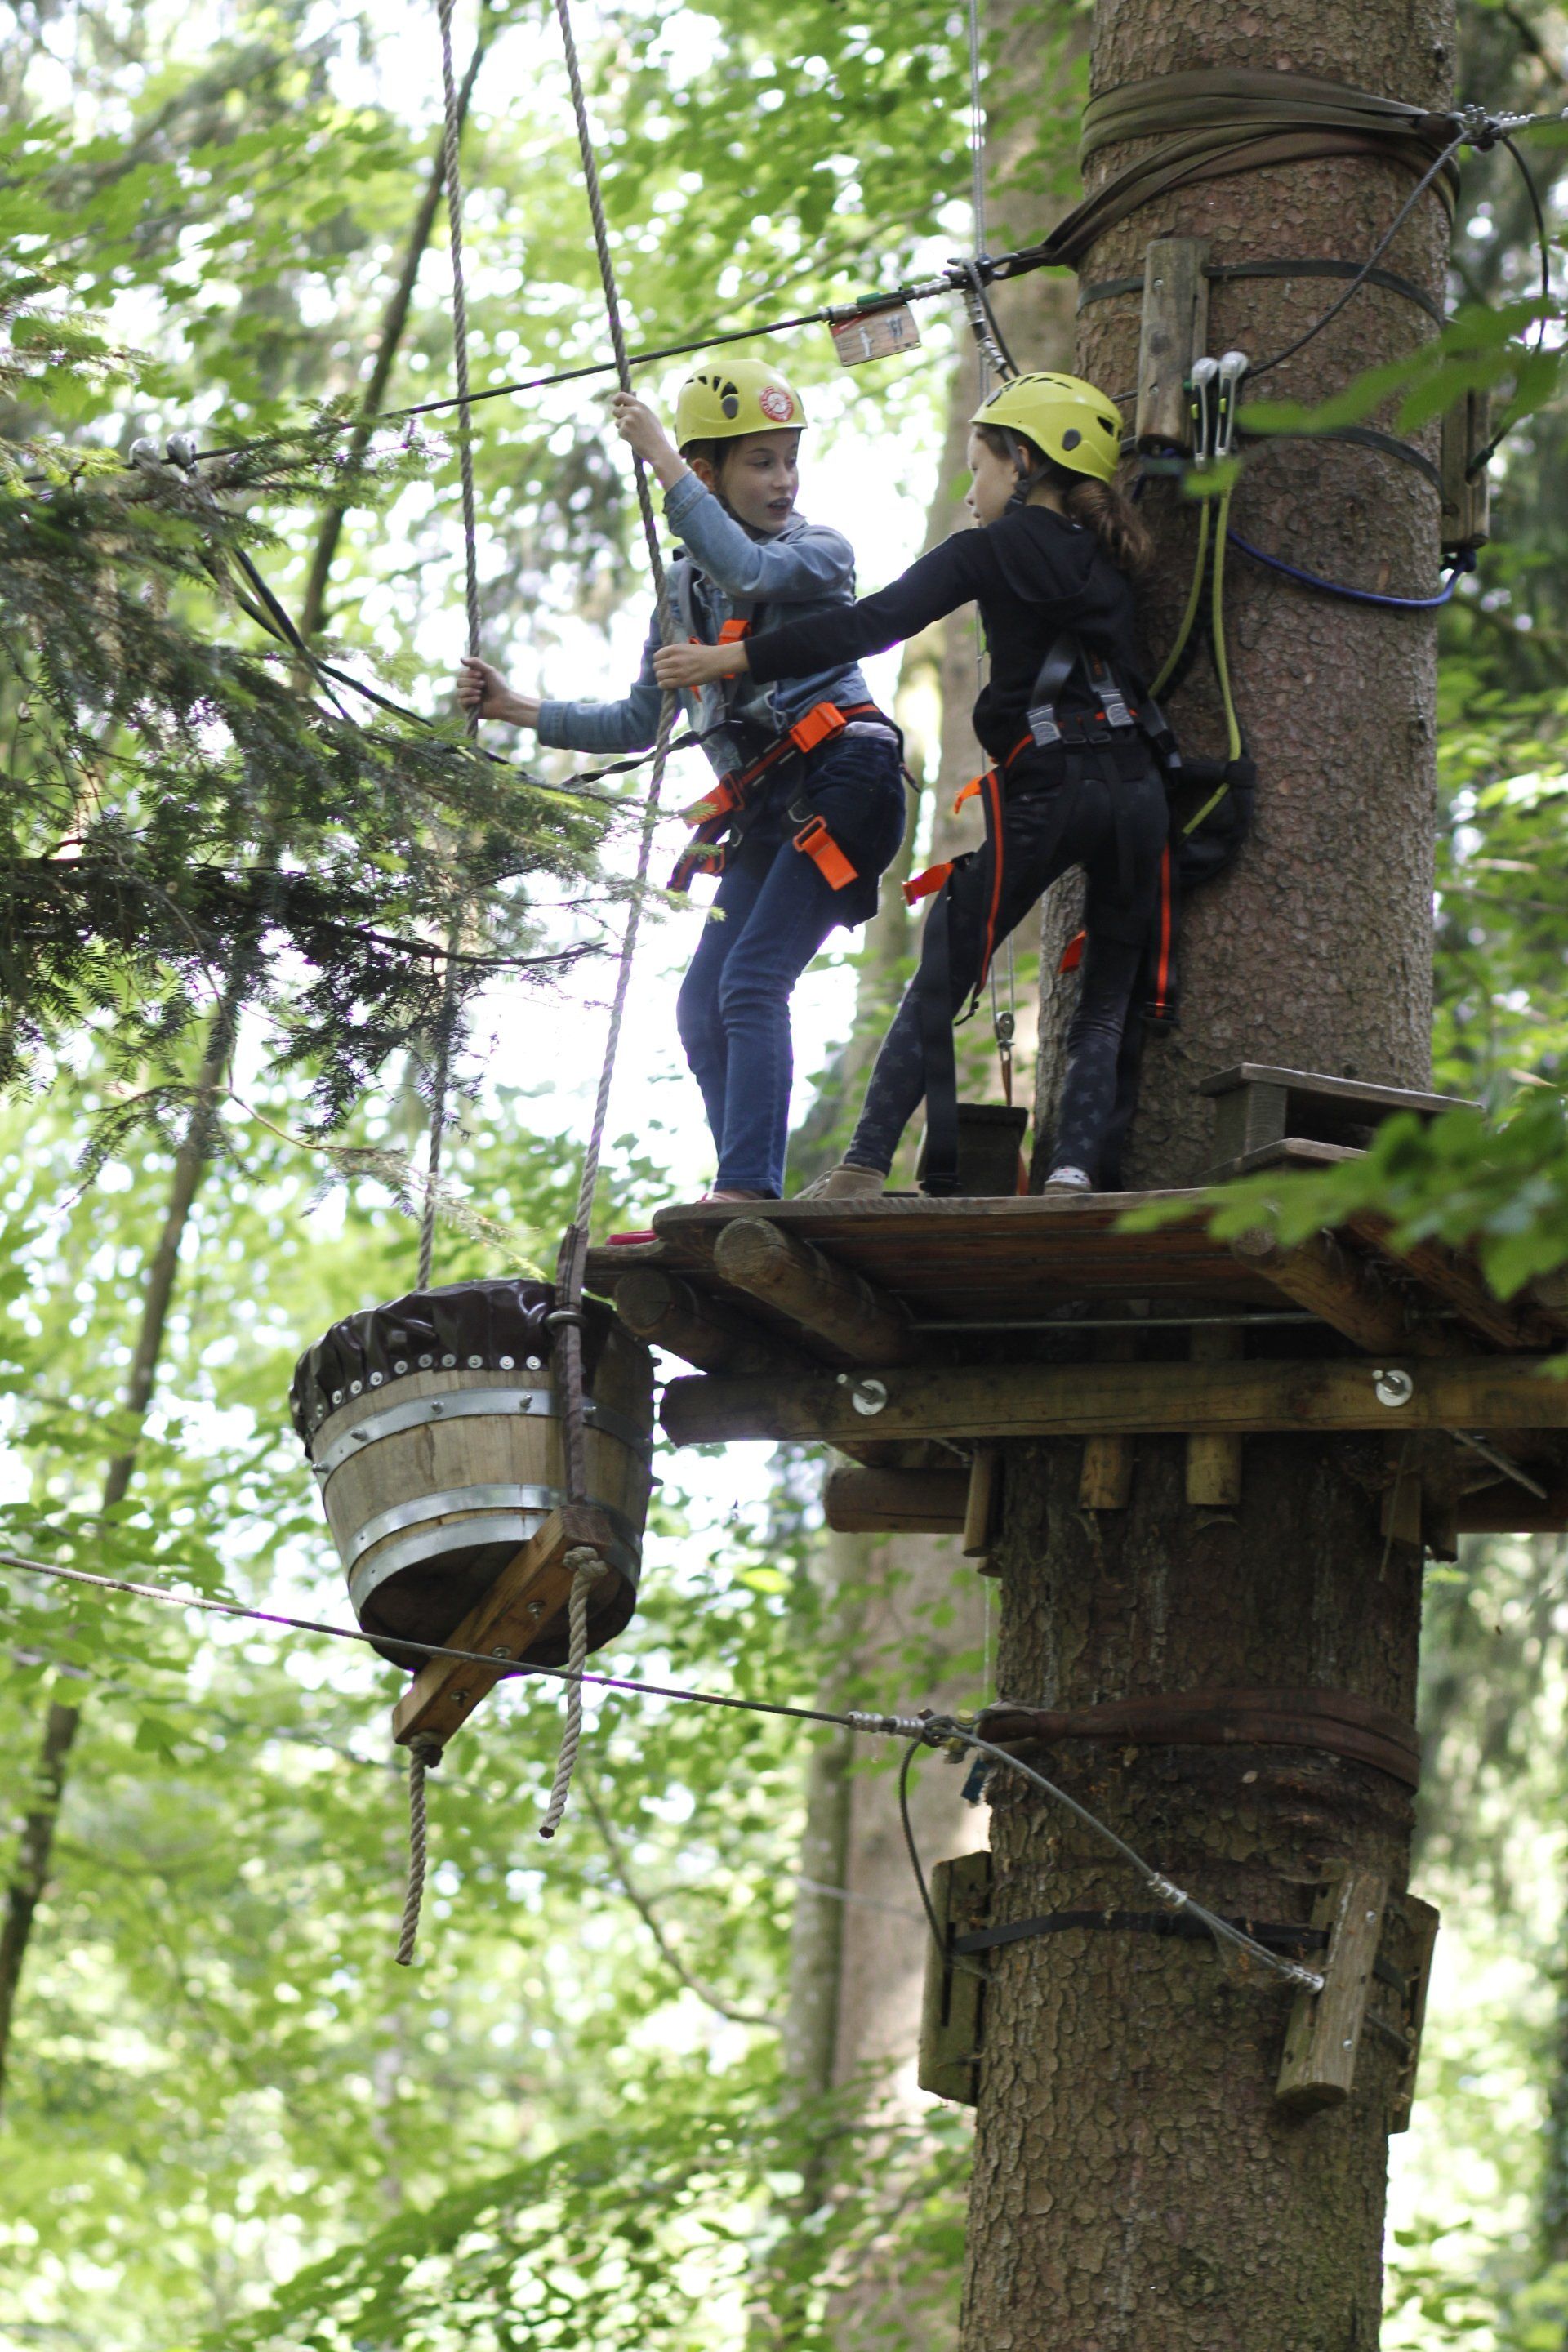 Zwei Personen klettern auf einen Baum, an dem ein Eimer befestigt ist.